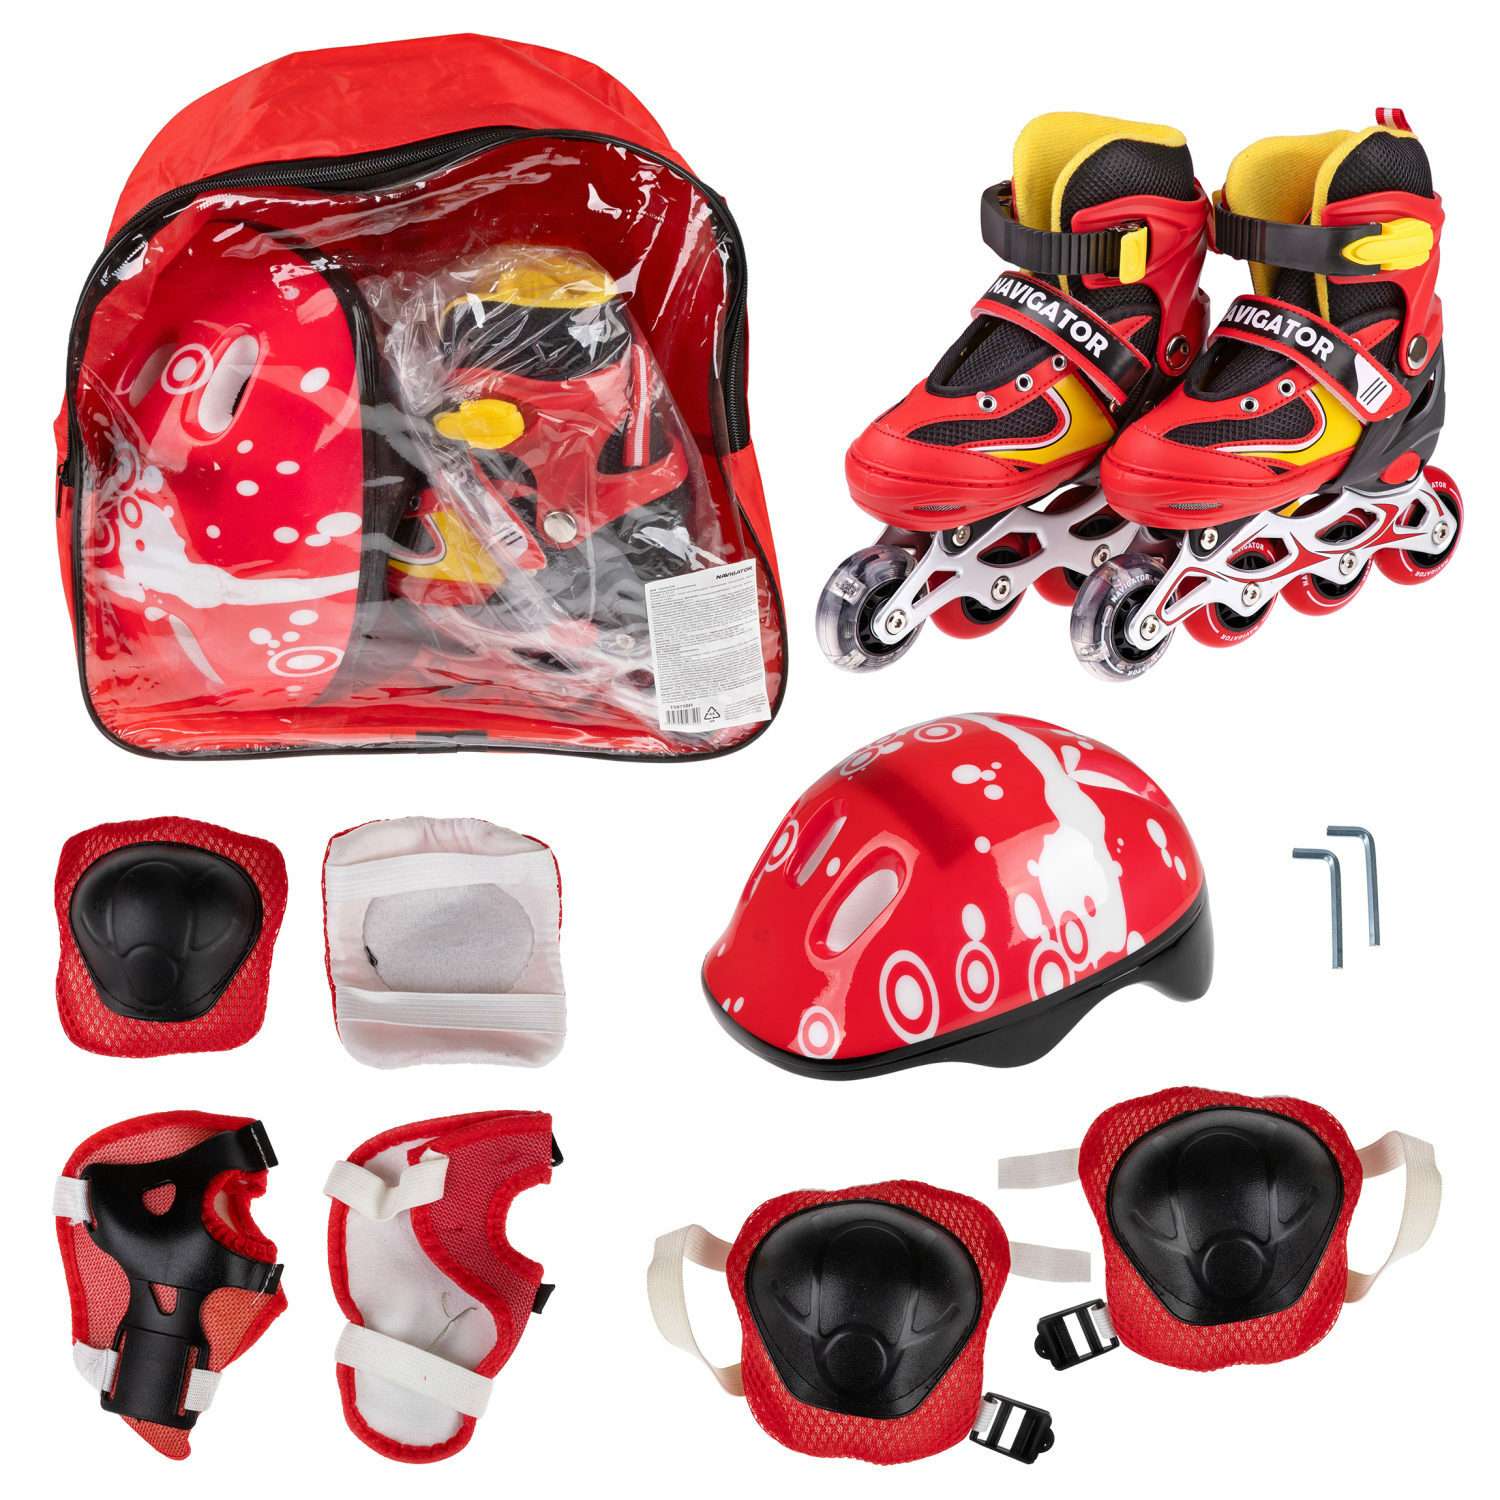 Ролики Navigator детские раздвижные 34 - 37 размер с защитой и шлемом красный - фото 3